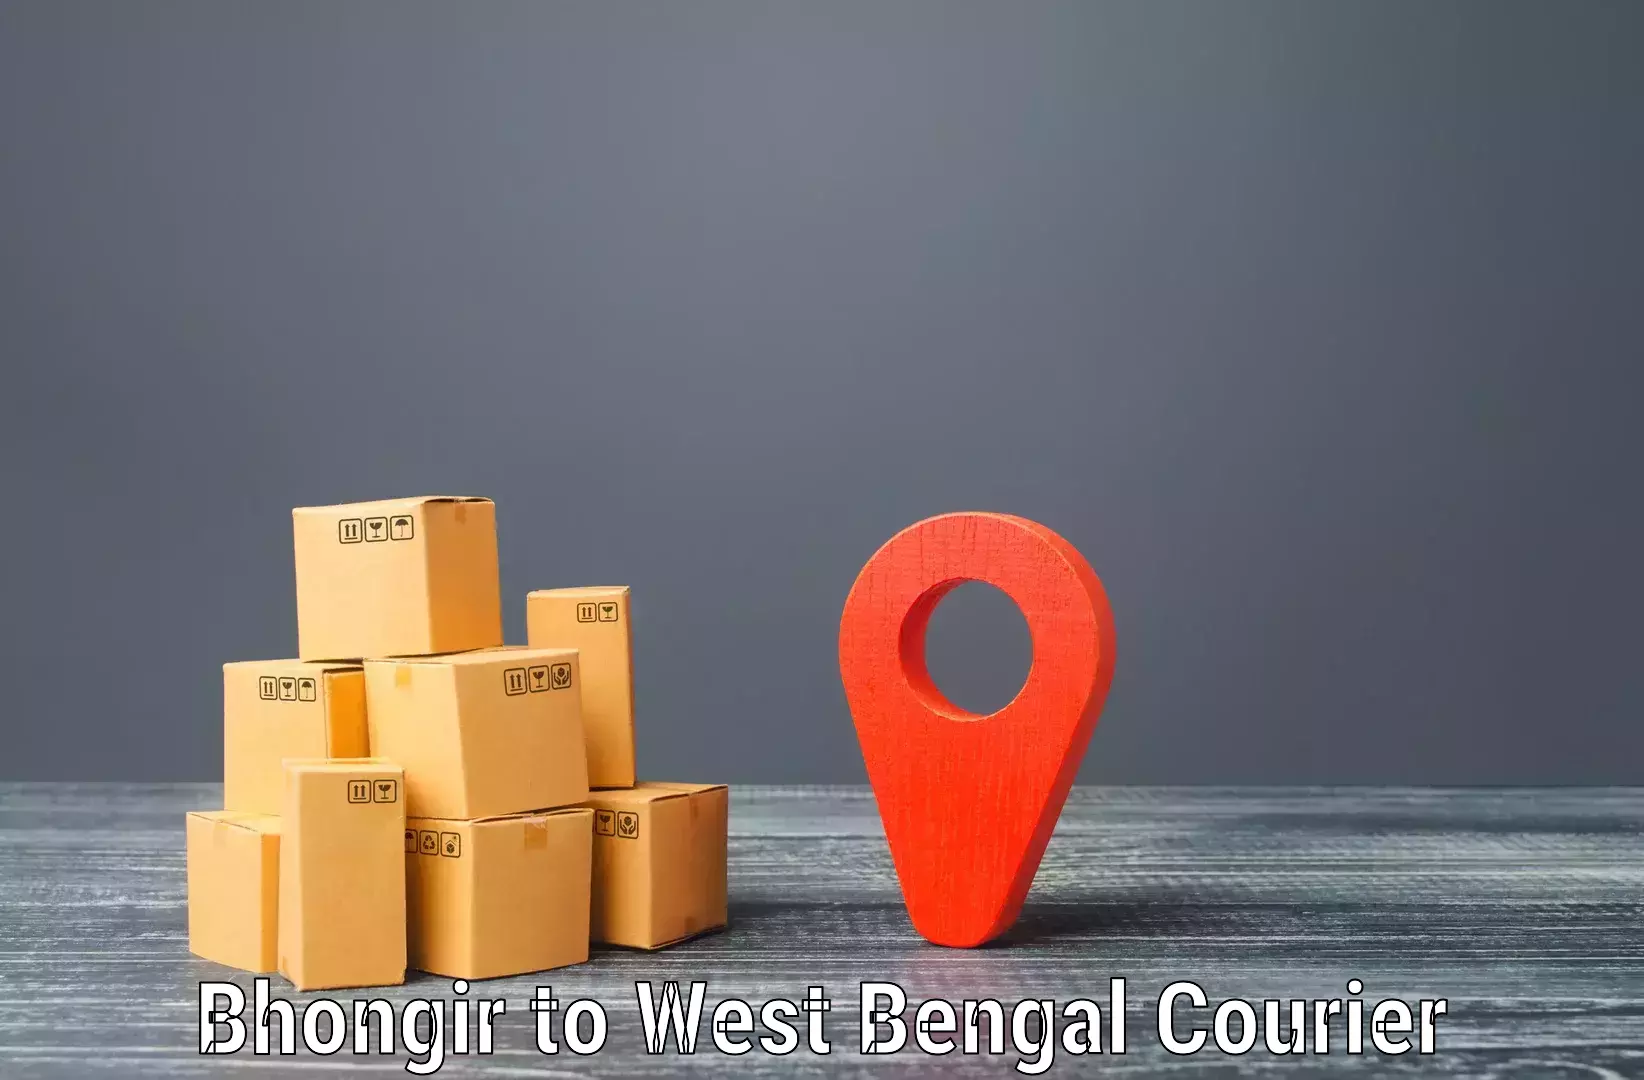 Premium courier solutions Bhongir to Shantiniketan